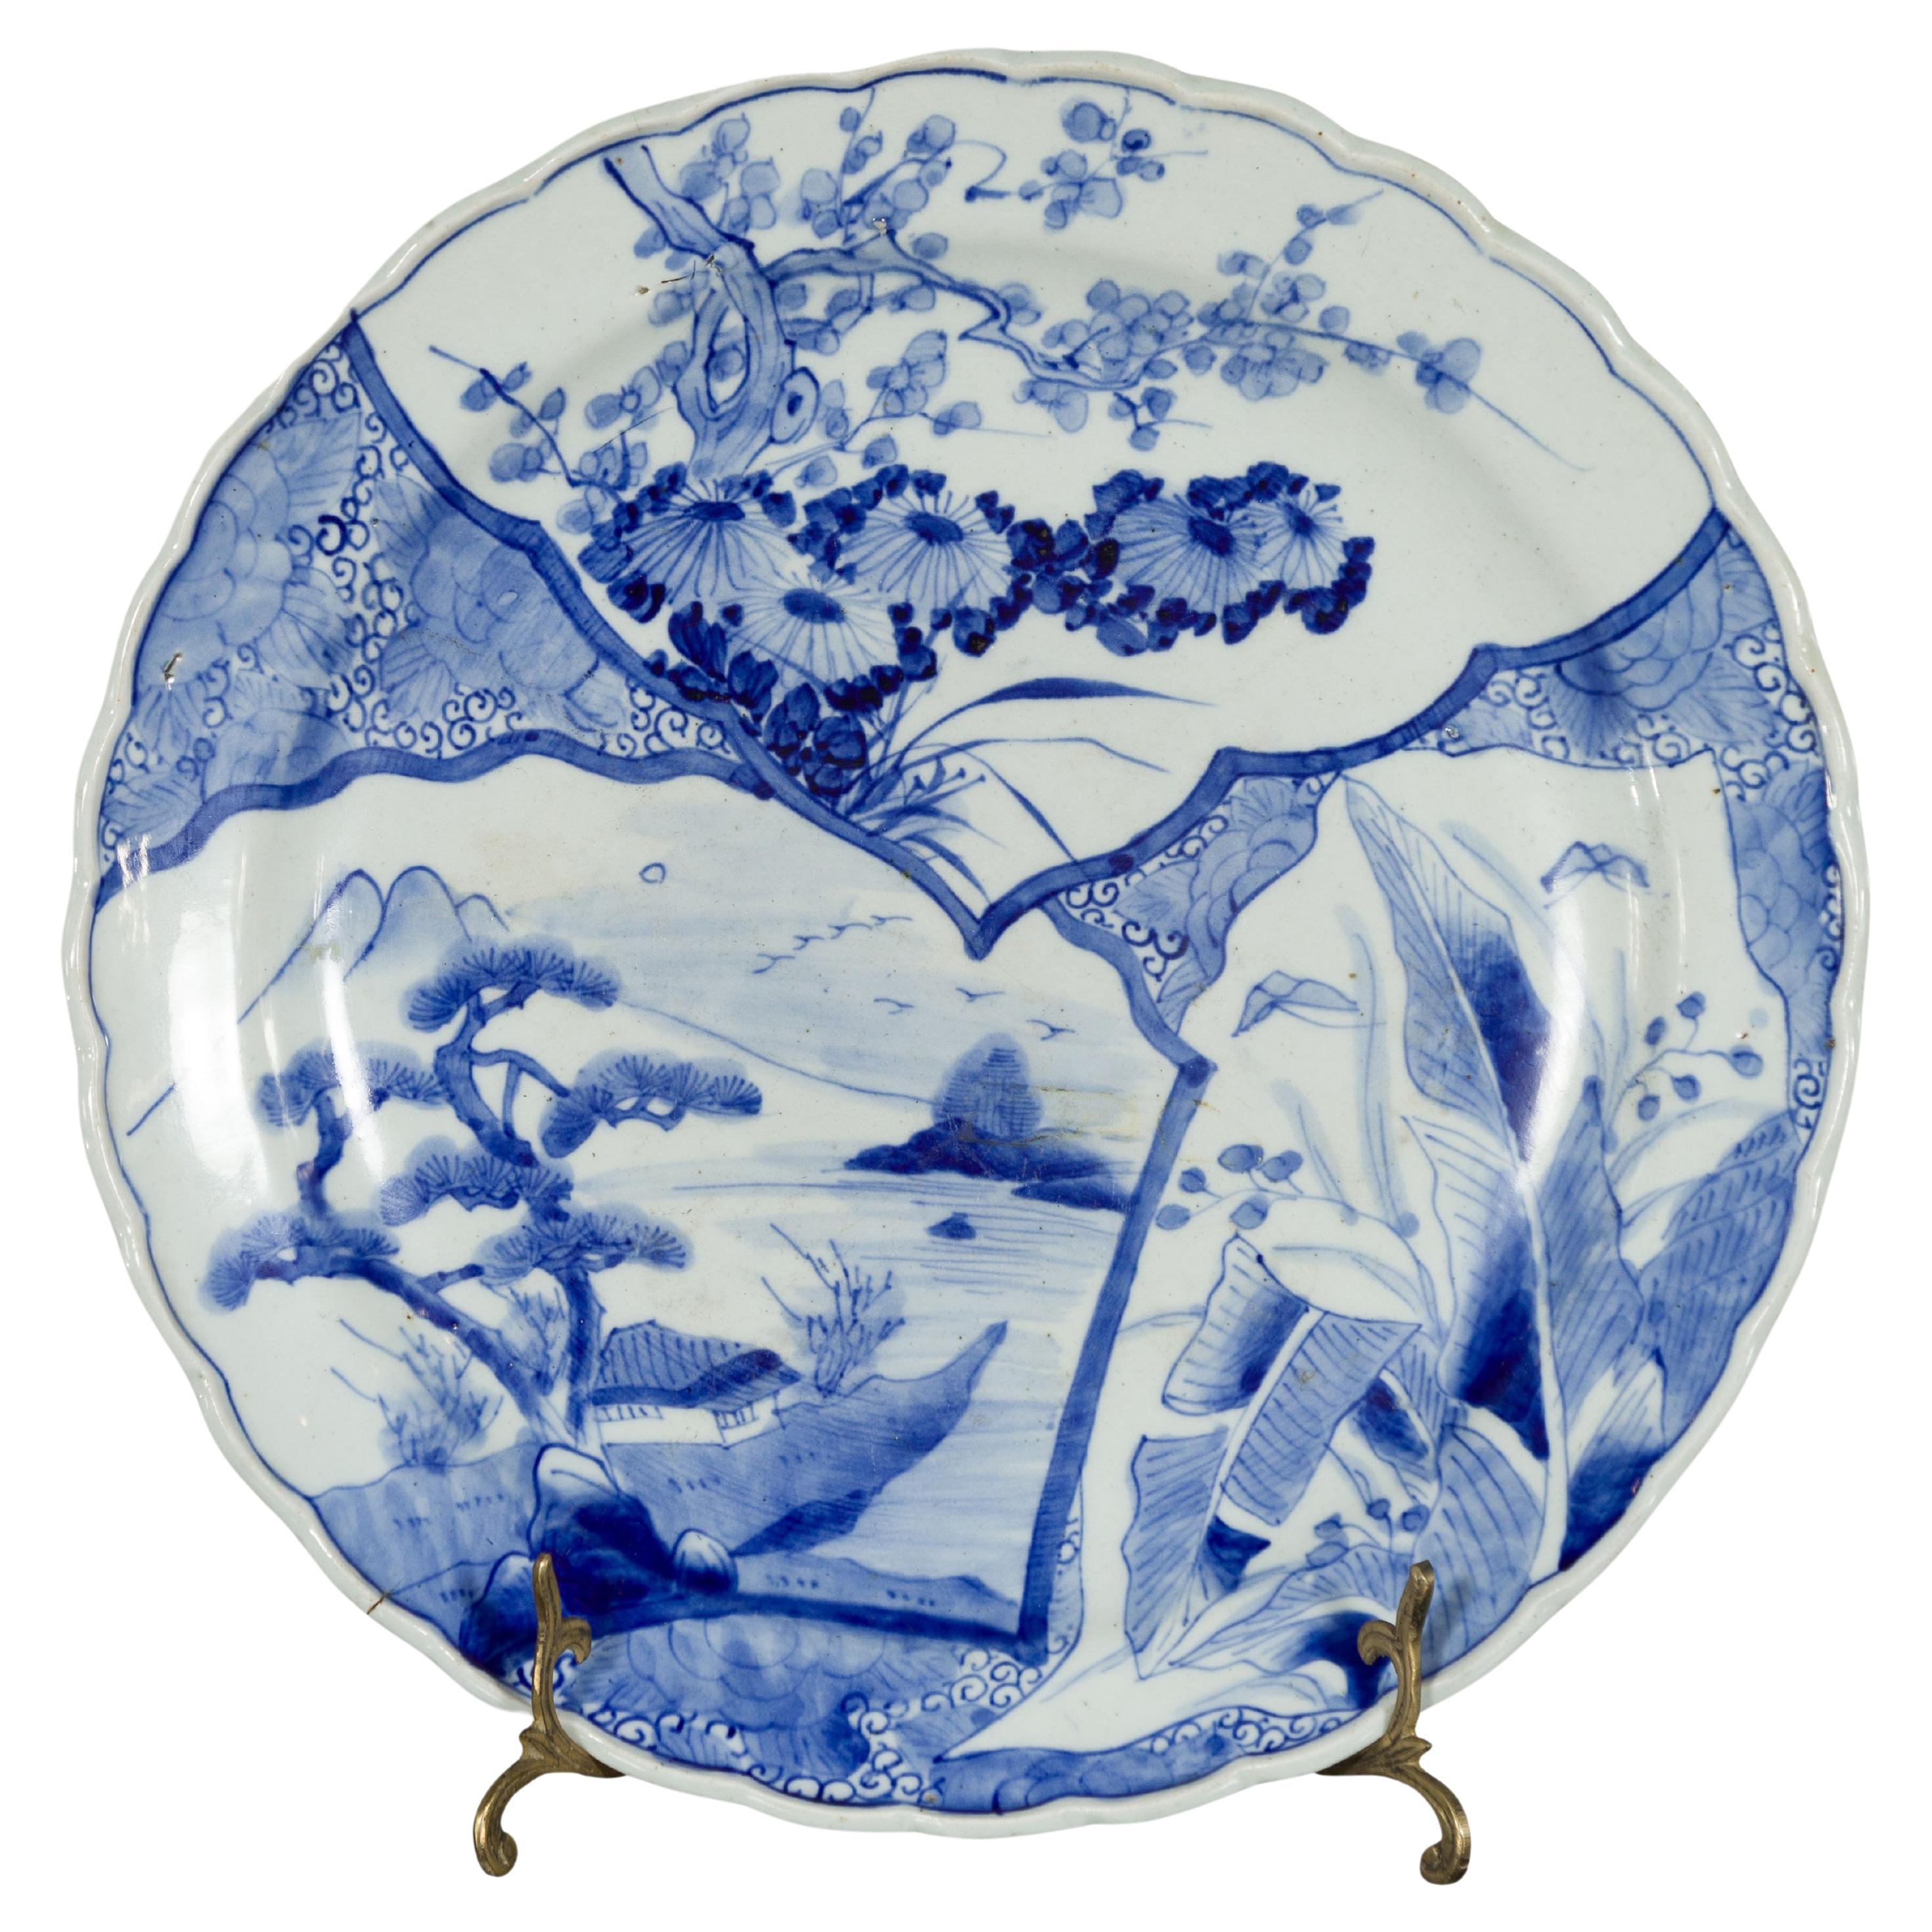 Assiette en porcelaine Imari japonaise du 19ème siècle avec décor peint en bleu et blanc